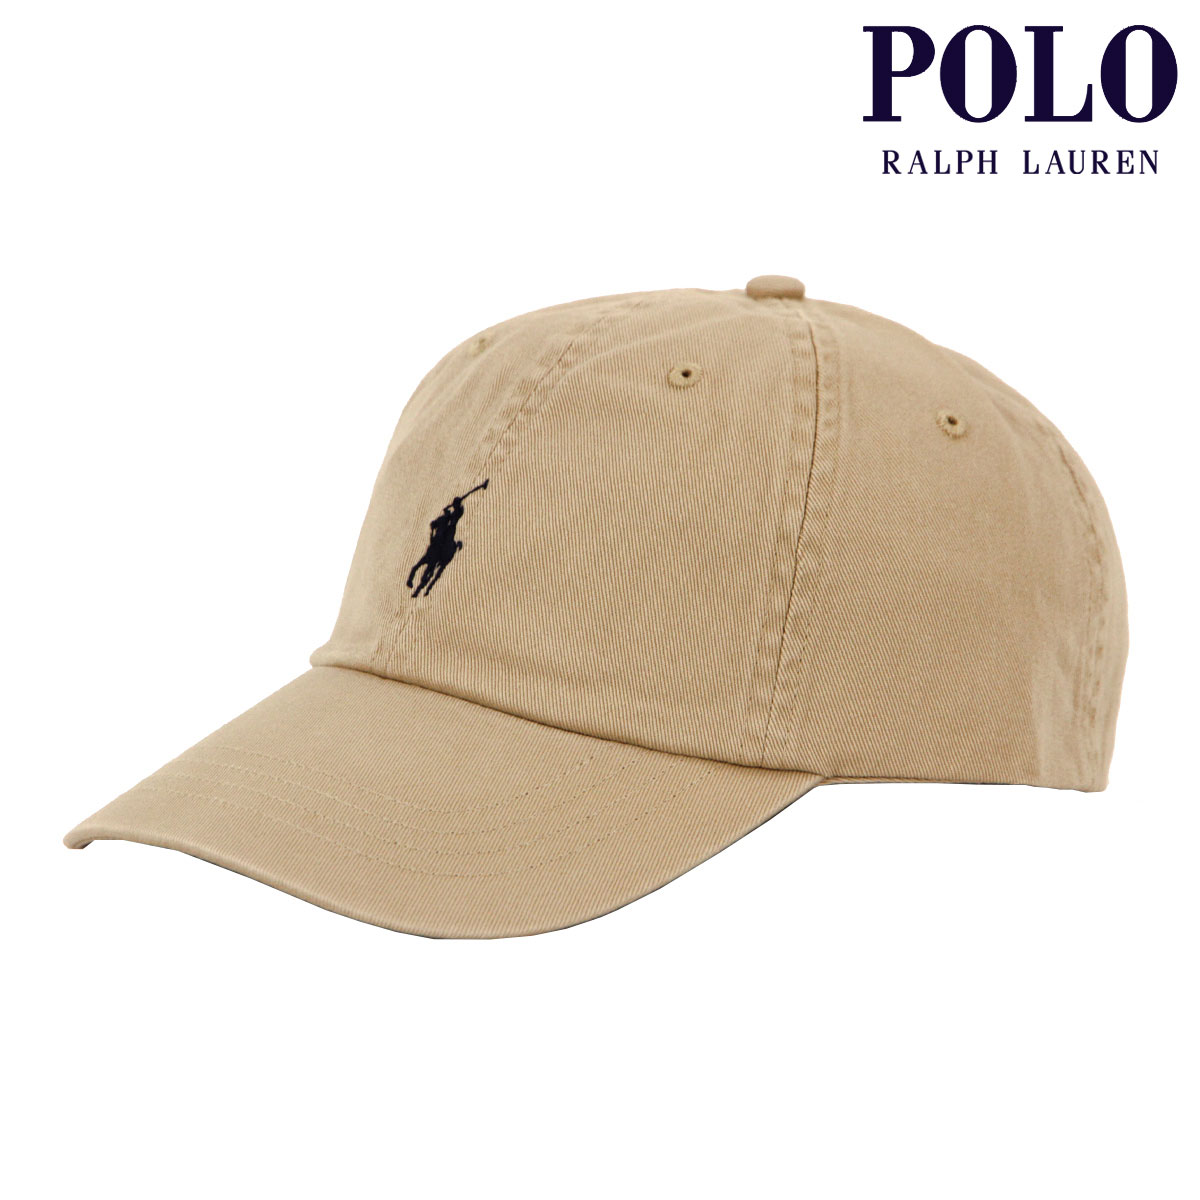 ポロ ラルフ ローレン ポロ ラルフローレン メンズ レディース キャップ 正規品 POLO RALPH LAUREN 帽子 ロゴ ポニー CLASSIC SPORTS CAP BEIGE 710548524